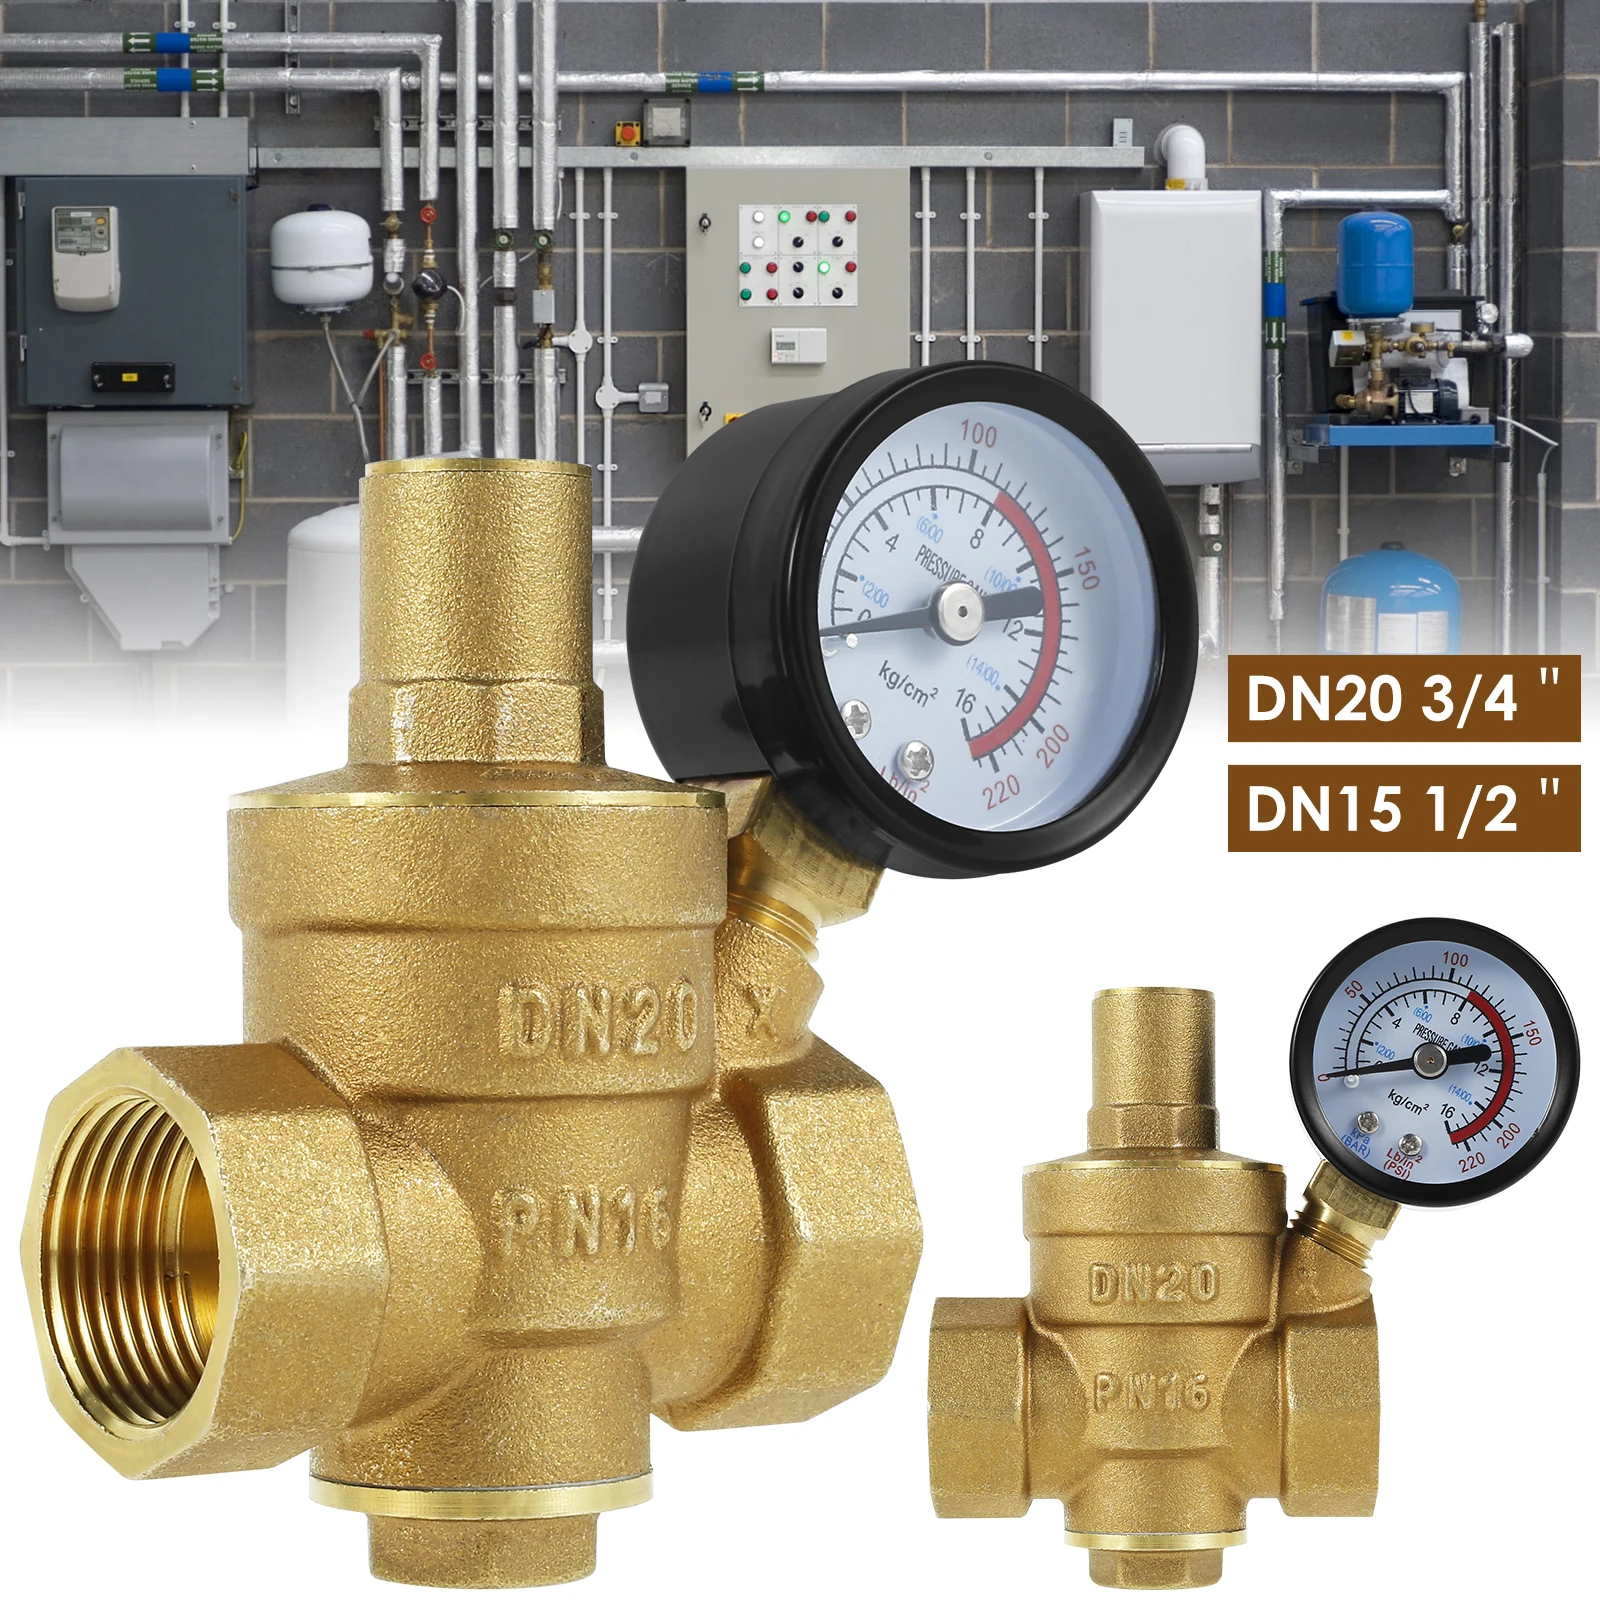 Water Pressure Reducer 3/4inch DN20 Brass Water Pressure Regulator Valve 1/2inch DN15 Adjustable Pressure Reducer with Pressure